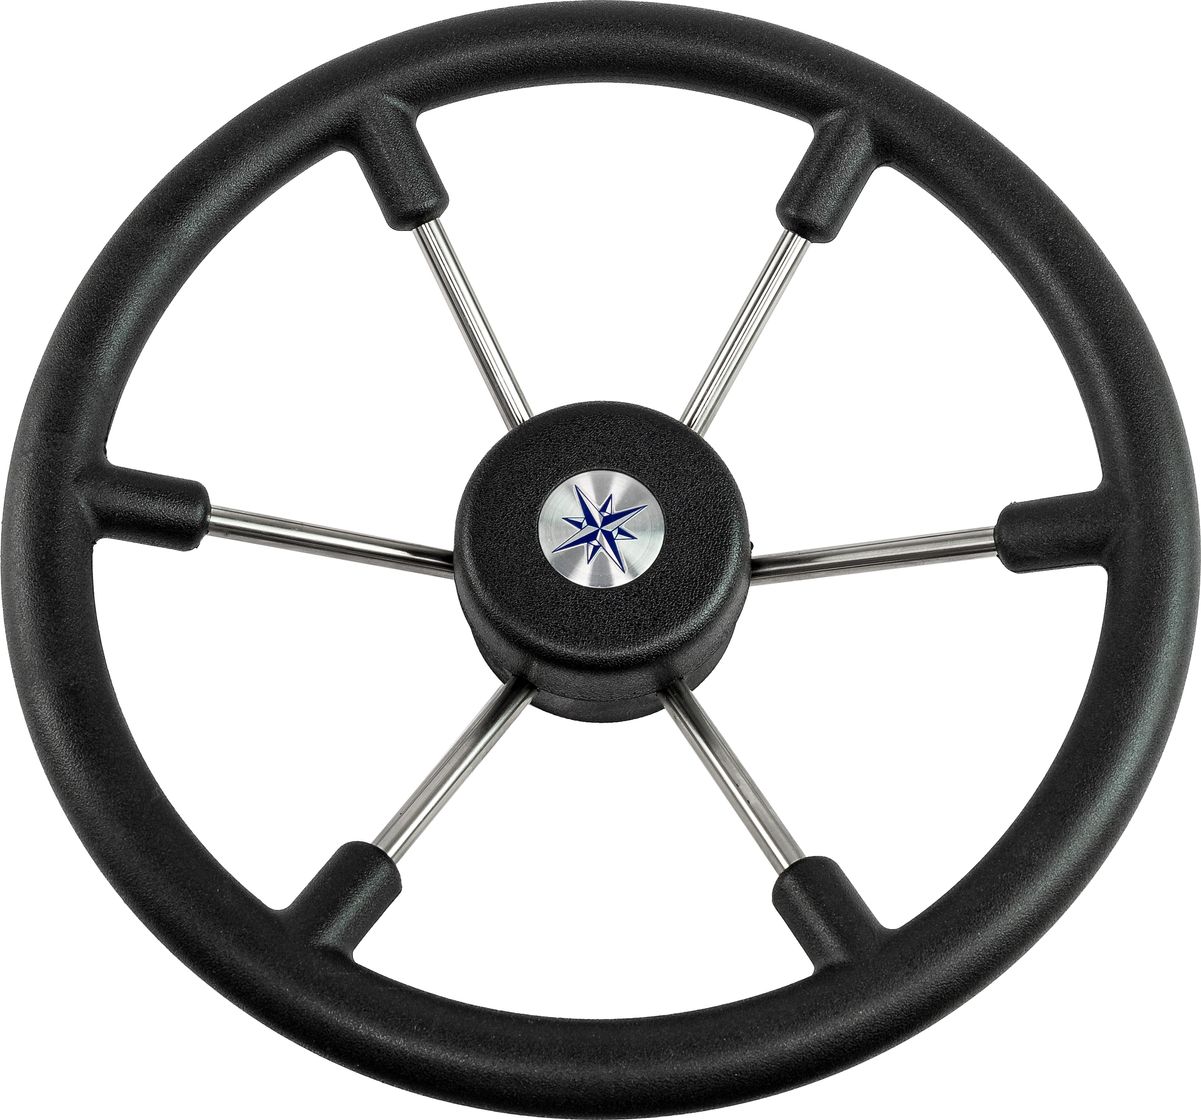 Рулевое колесо LEADER TANEGUM черный обод серебряные спицы д. 360 мм VN7360-01 рулевое колесо leader plast обод серебряные спицы д 360 мм vn8360 01